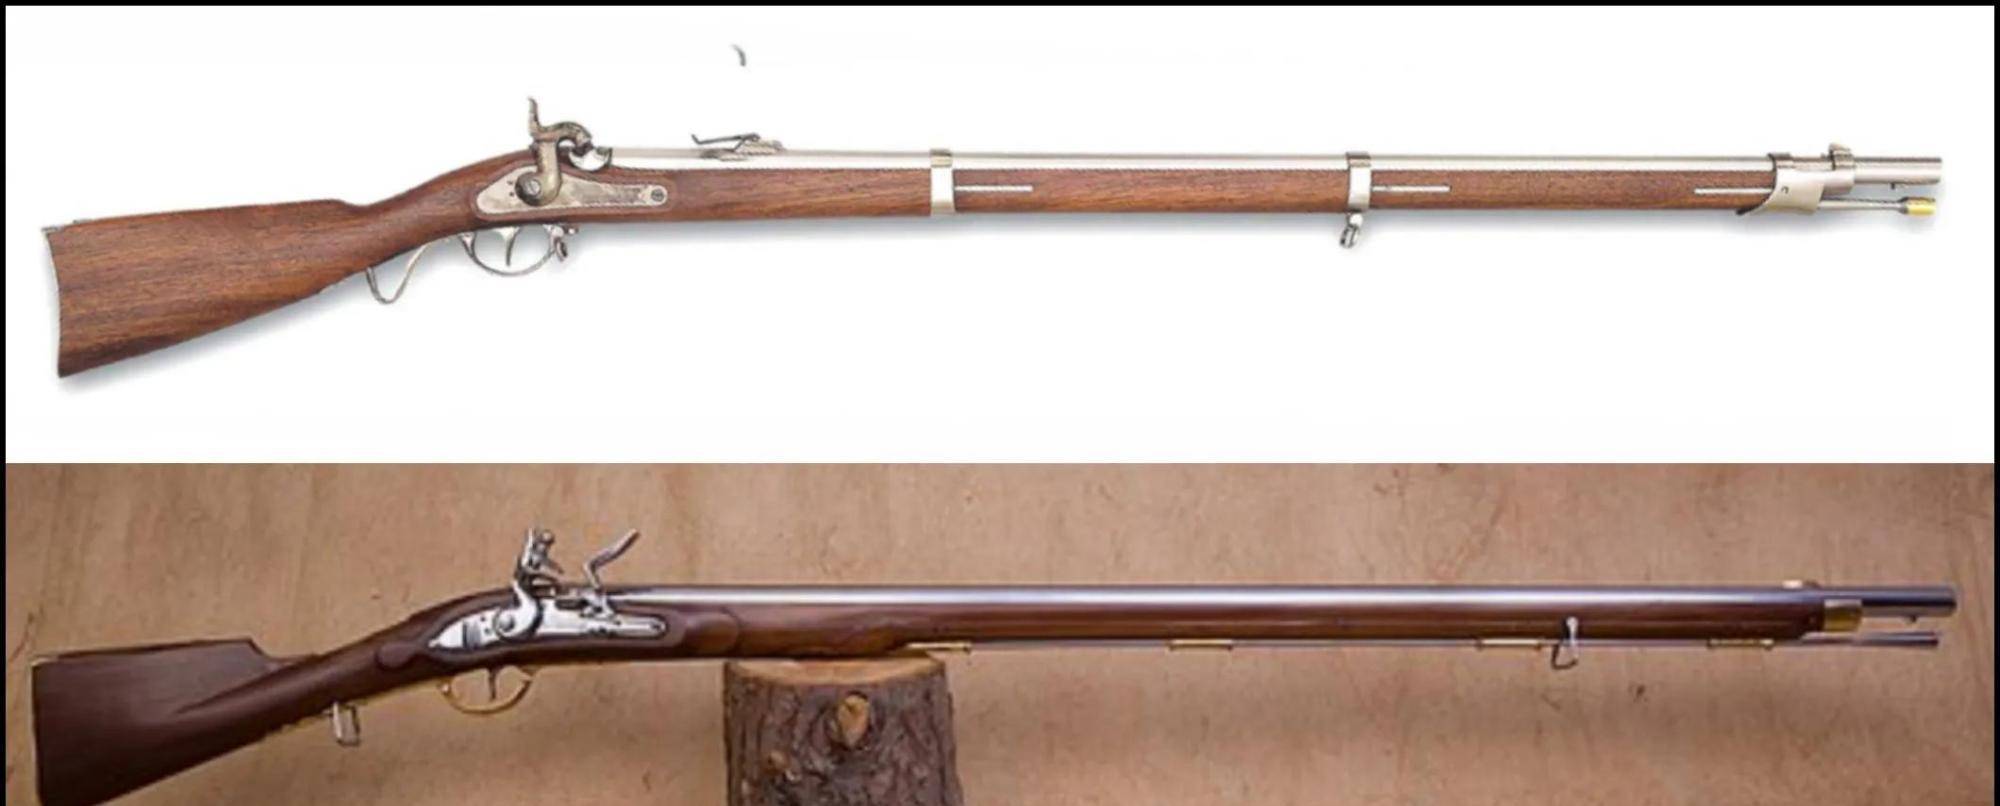 夏普斯1859式后装步枪图片